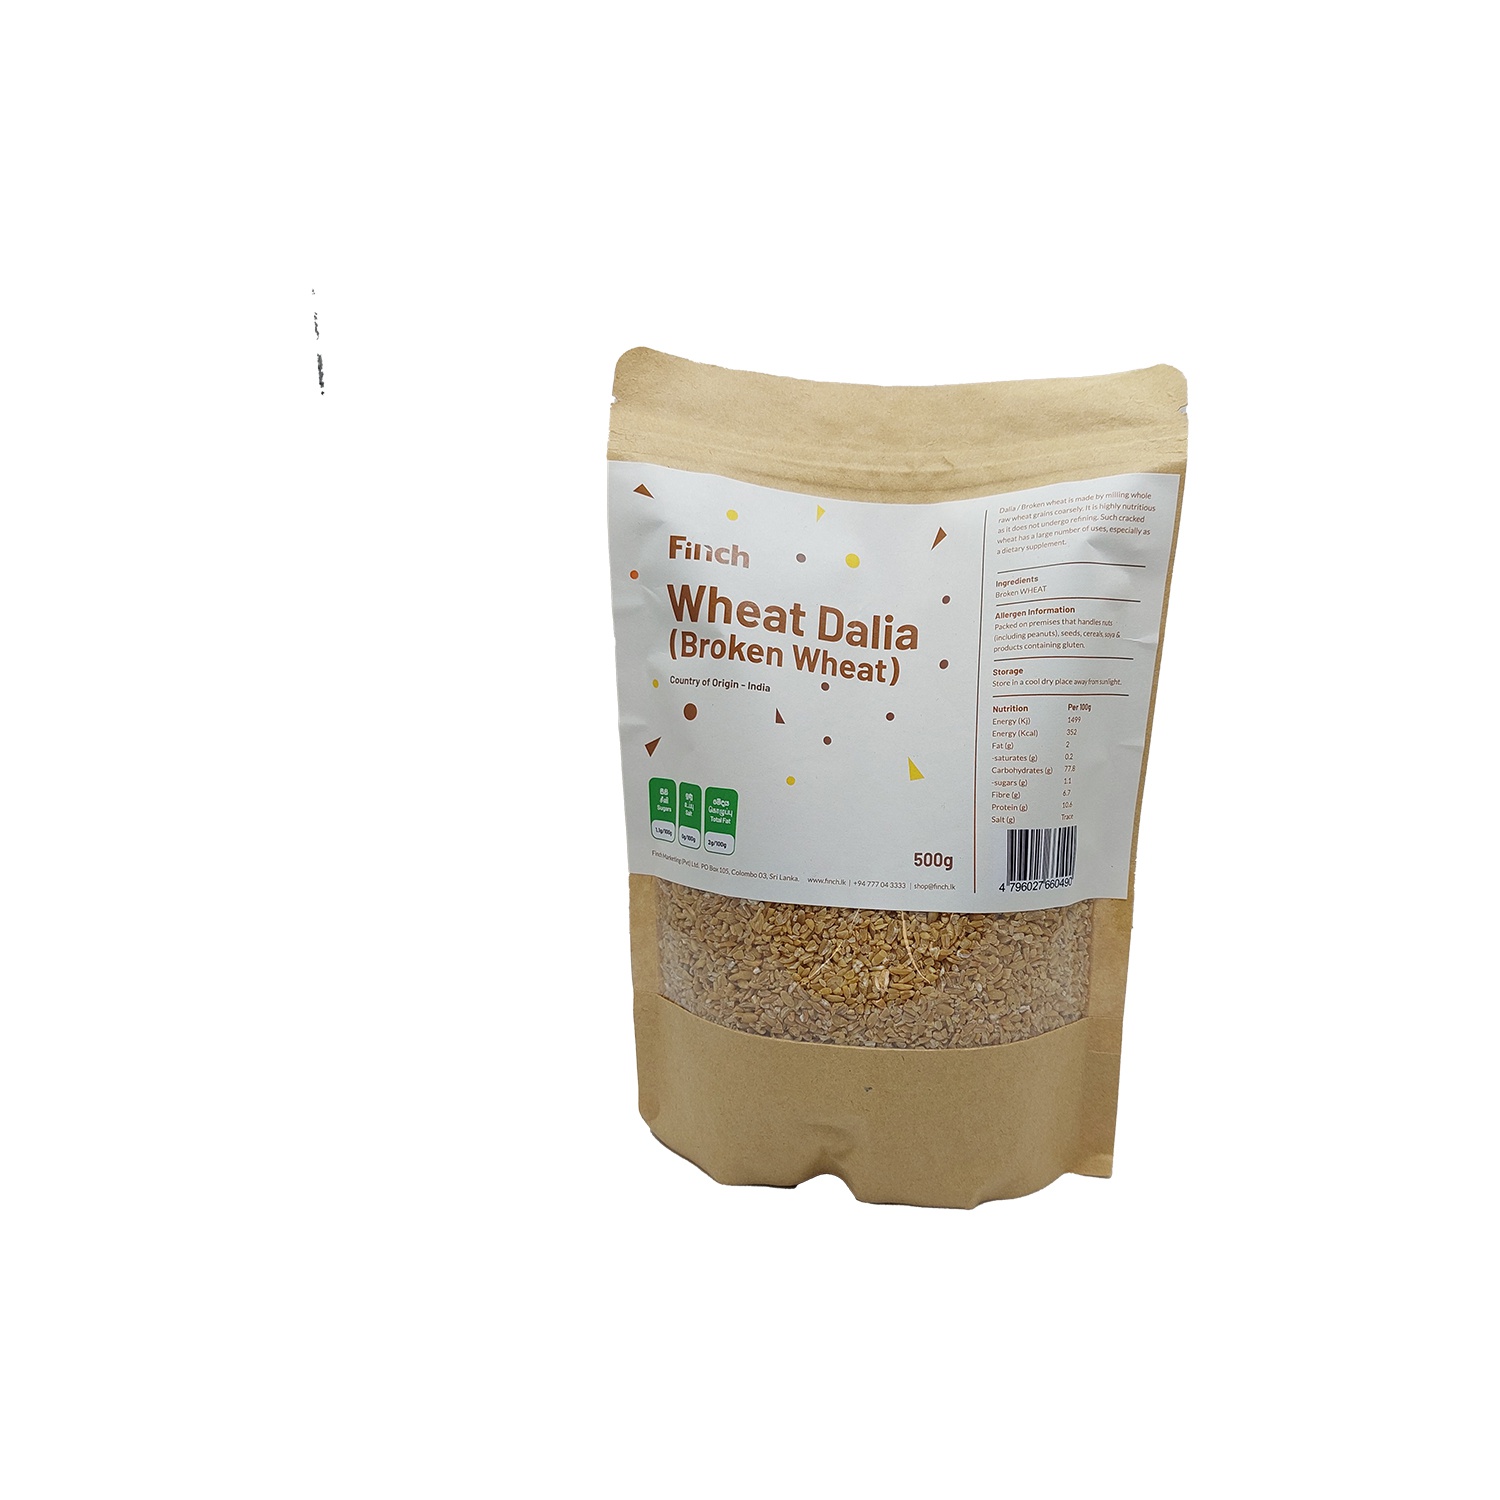 Finch Broken Wheat 500G - FINCH - Flour - in Sri Lanka